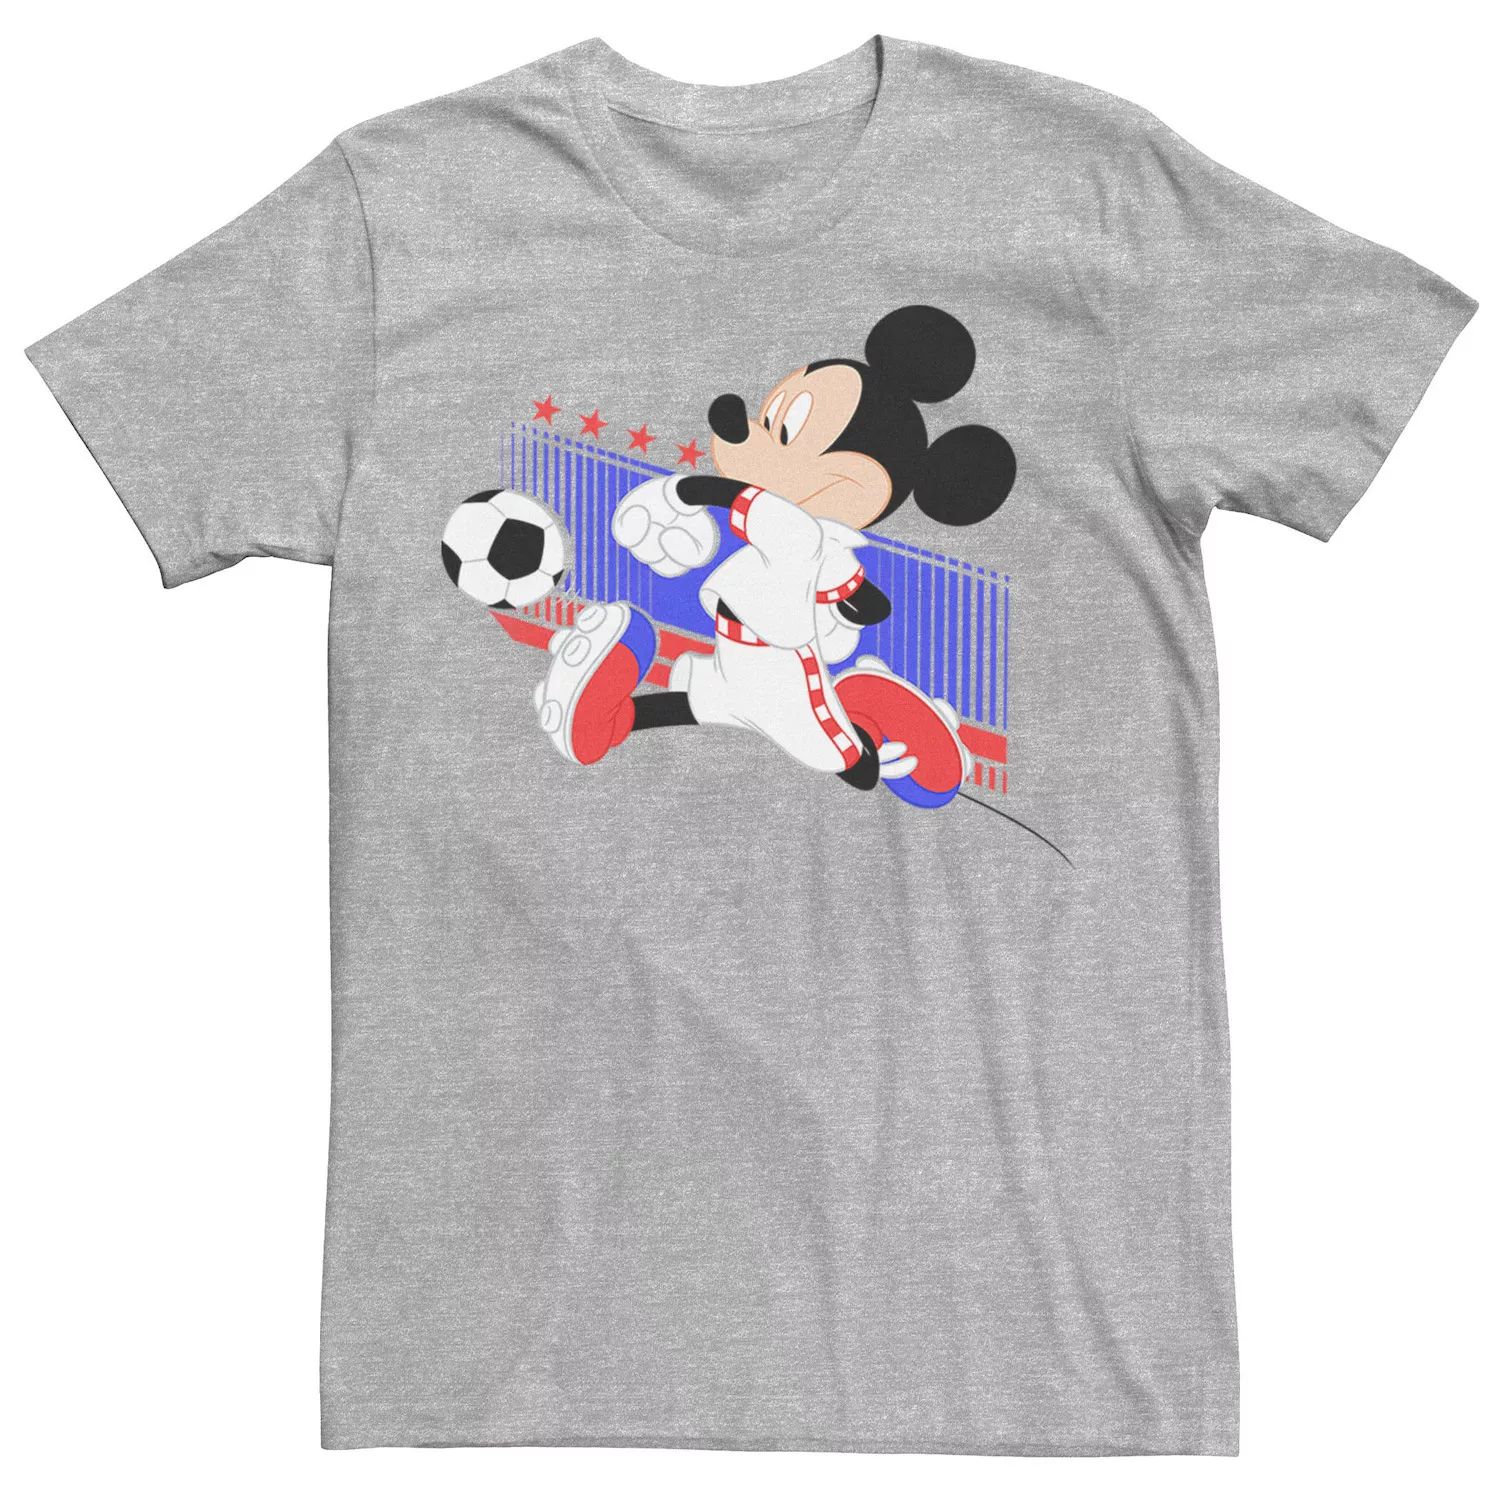 Мужская футболка с портретом Микки Мауса, Хорватия, футбольная форма Disney мужская футболка с изображением микки мауса бразильская футбольная форма портретная футболка disney